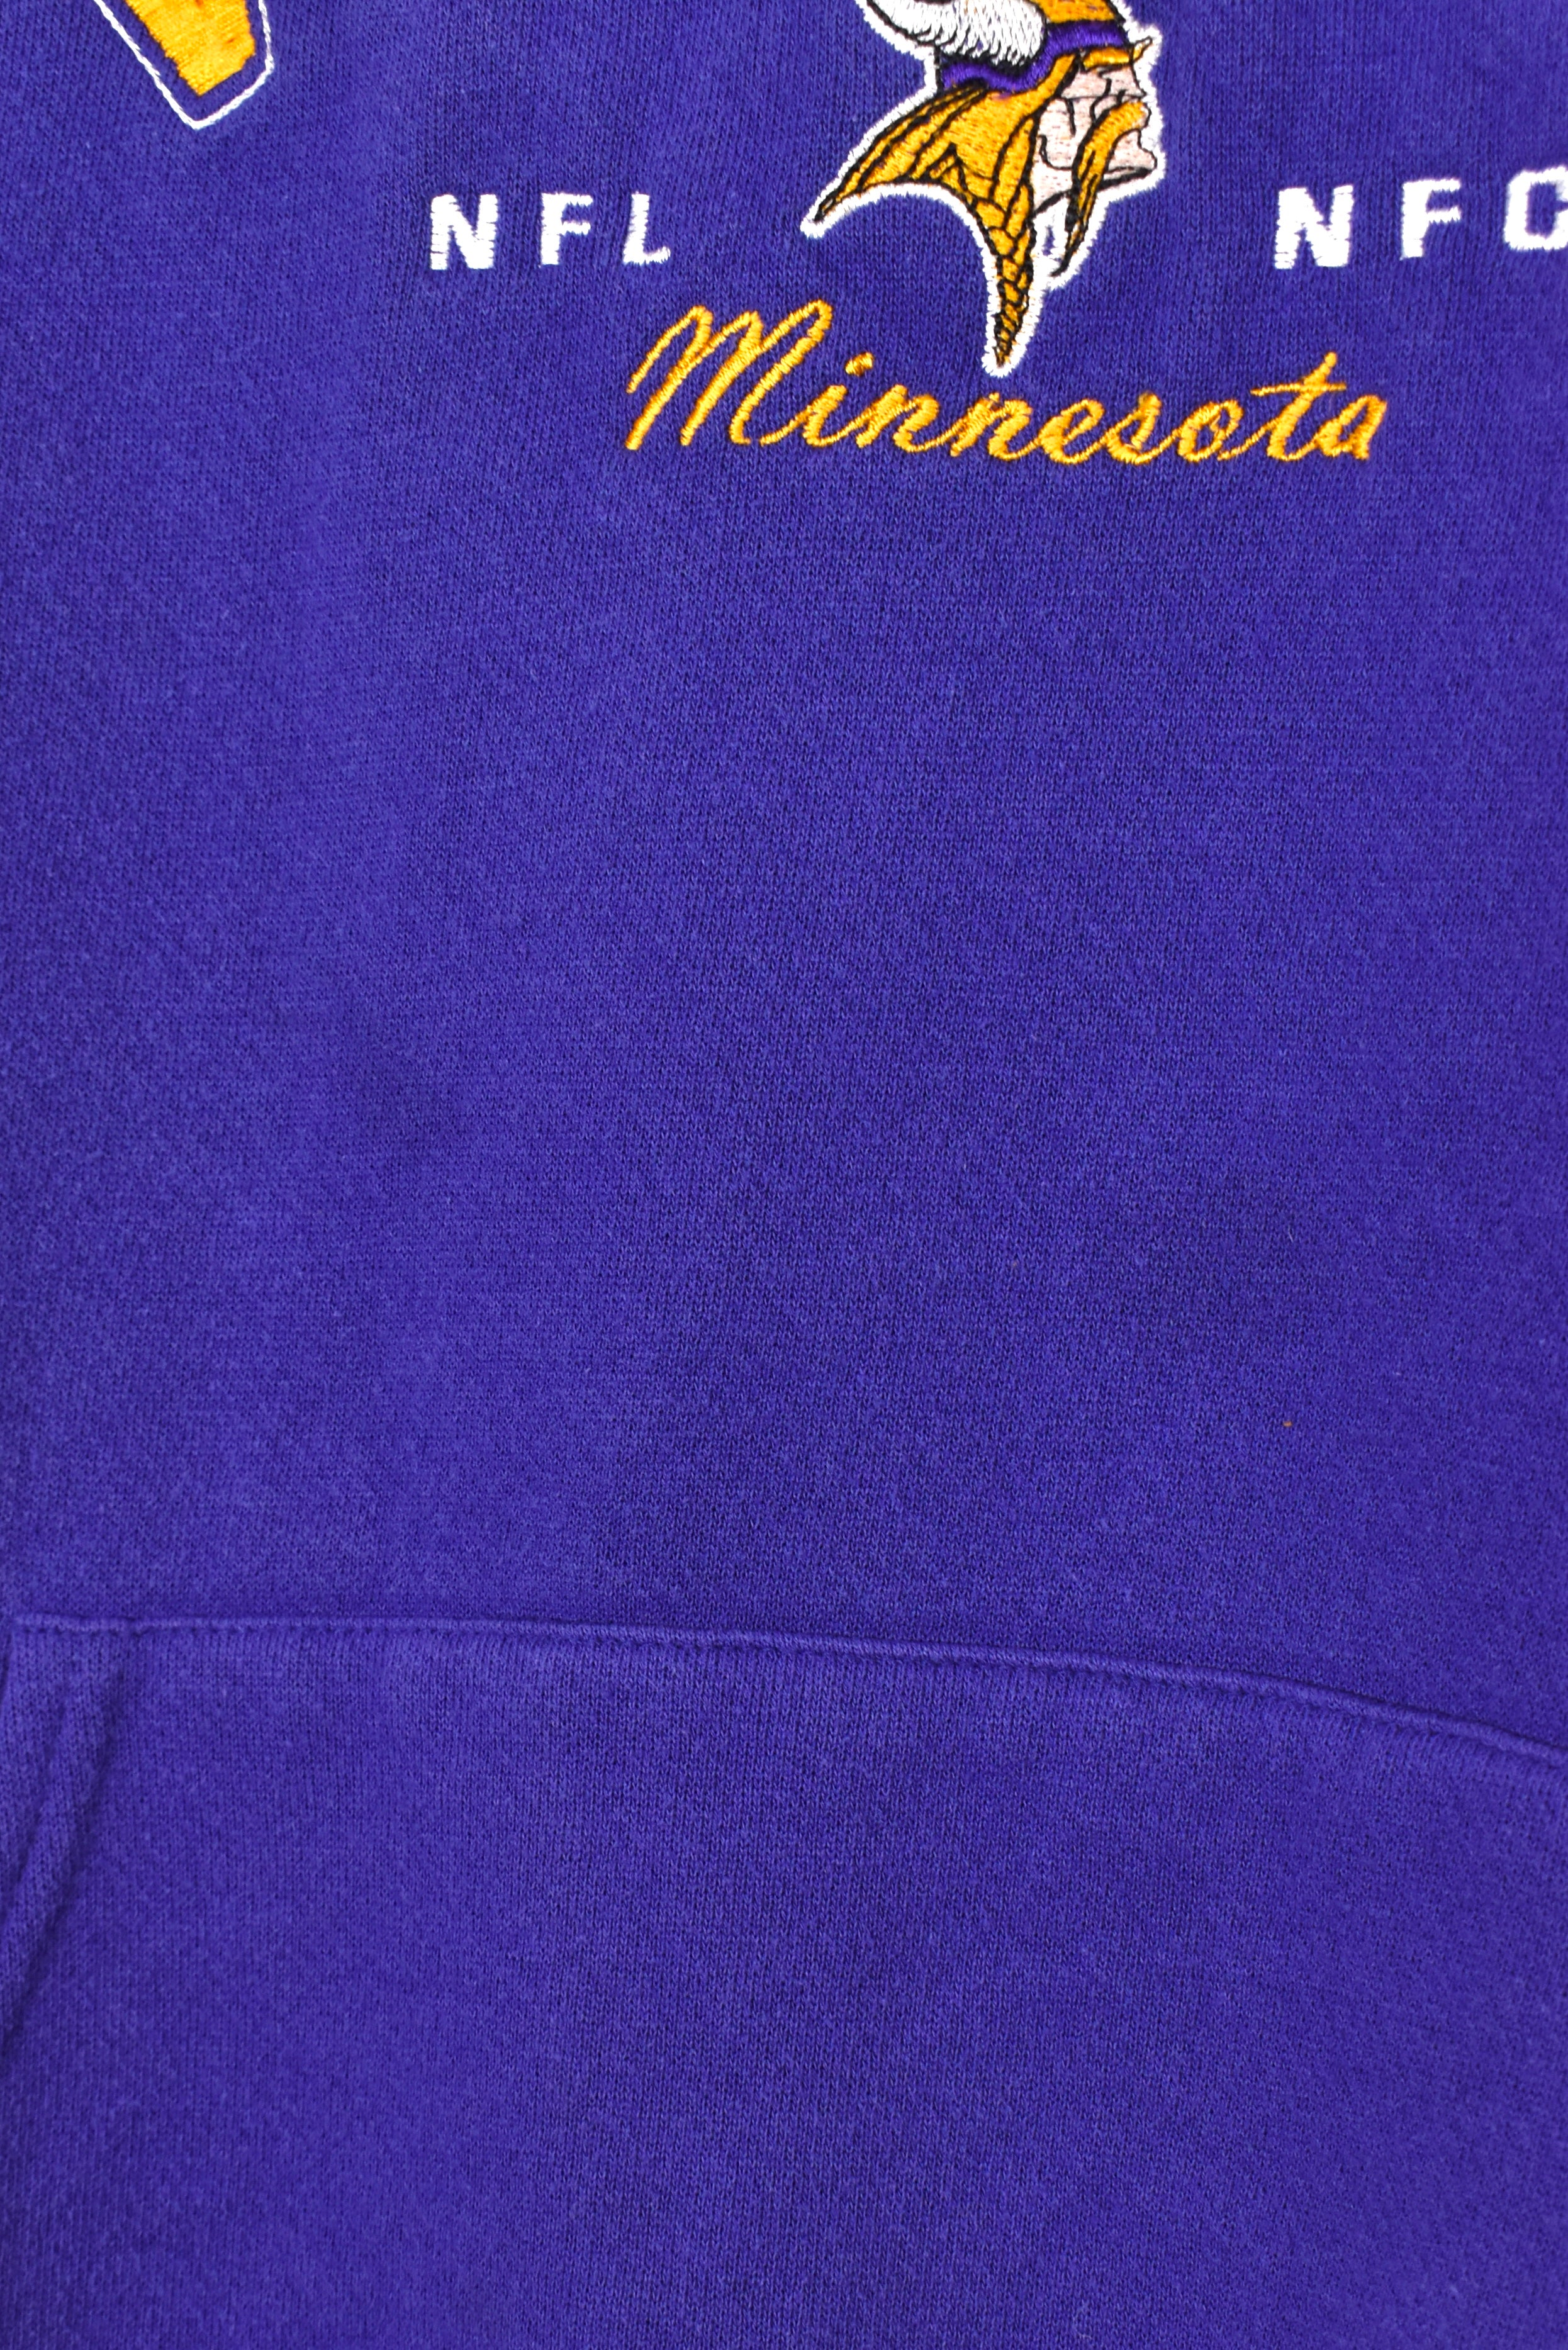 Vintage Minnesota Vikings hoodie, purple NFL embroidered sweatshirt - Large